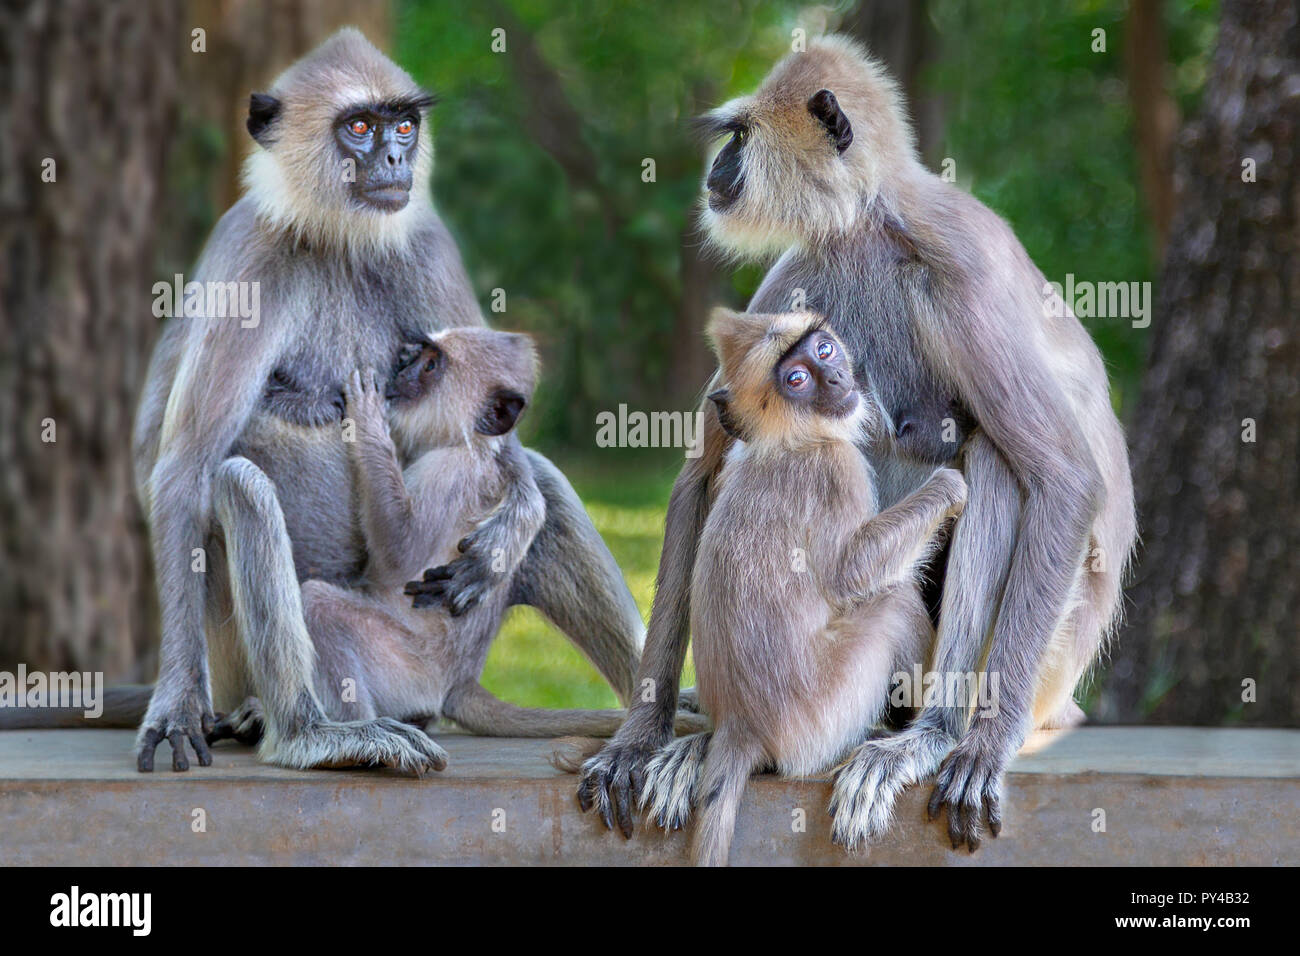 Les singes Langur au Sri Lanka Banque D'Images